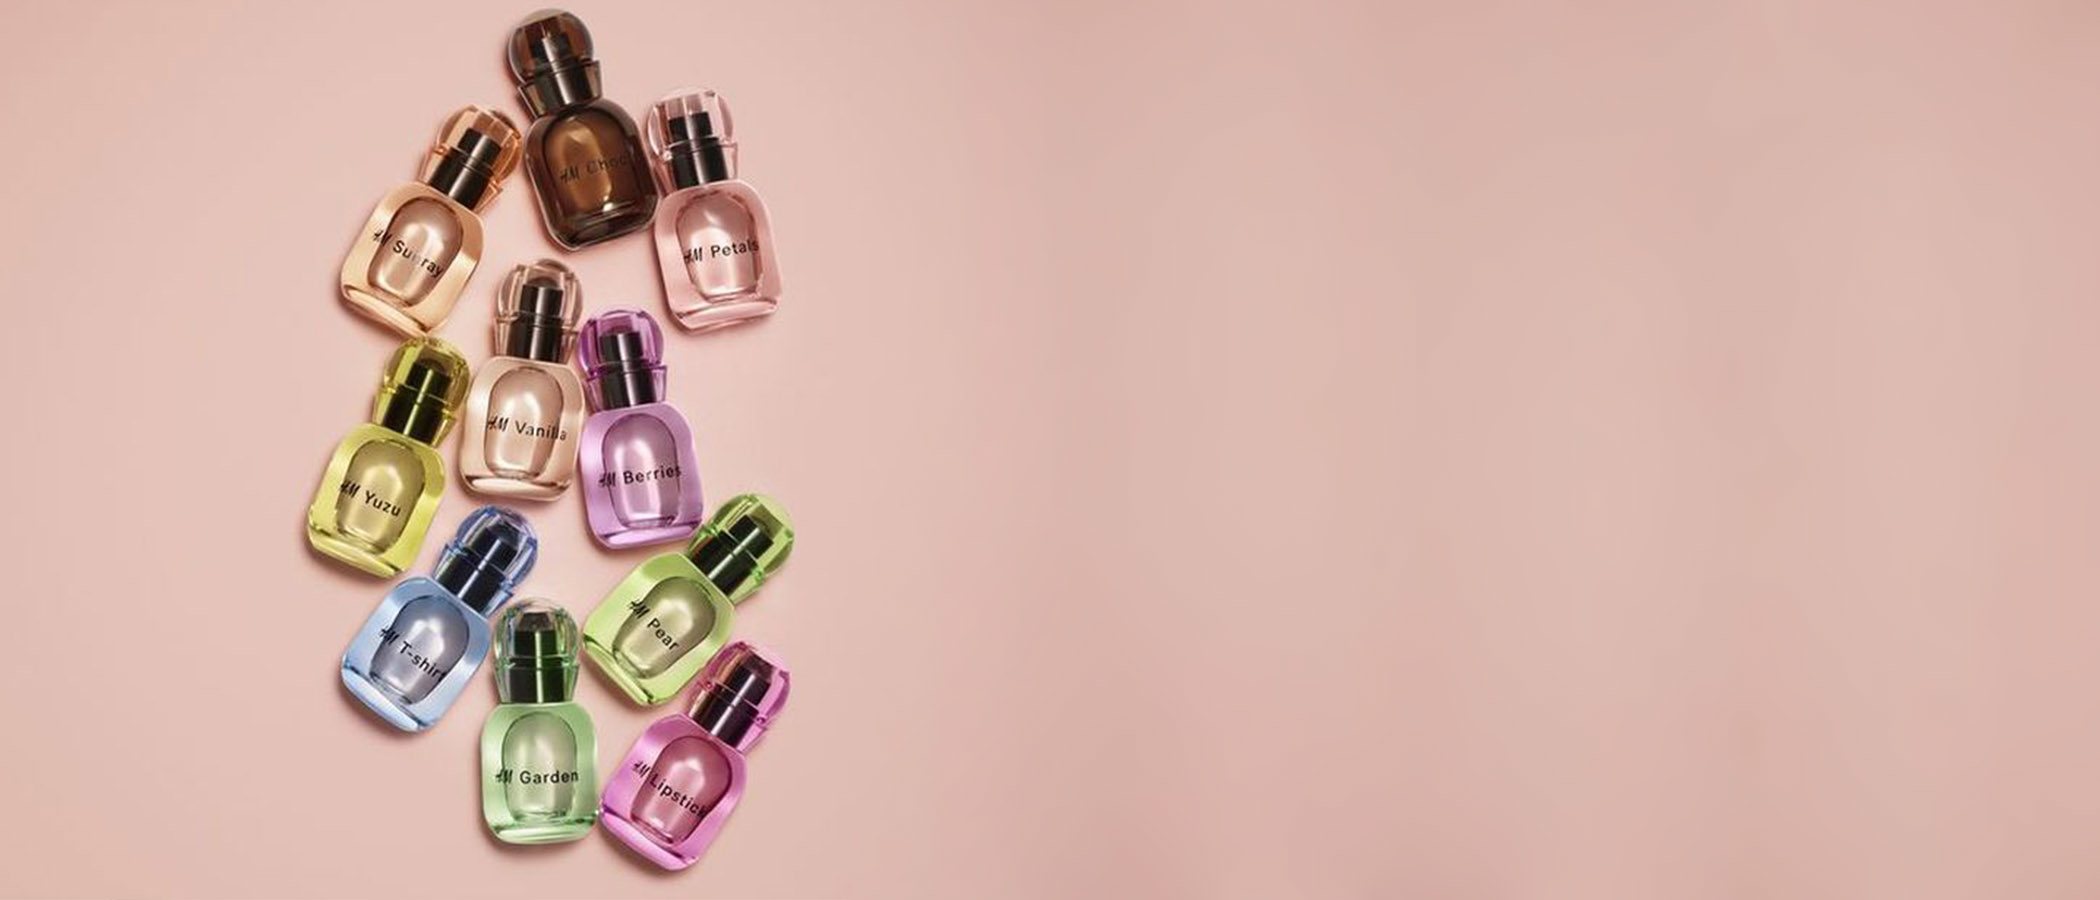 H&M amplía su línea de productos 'beauty' con el lanzamiento de 25 nuevos perfumes